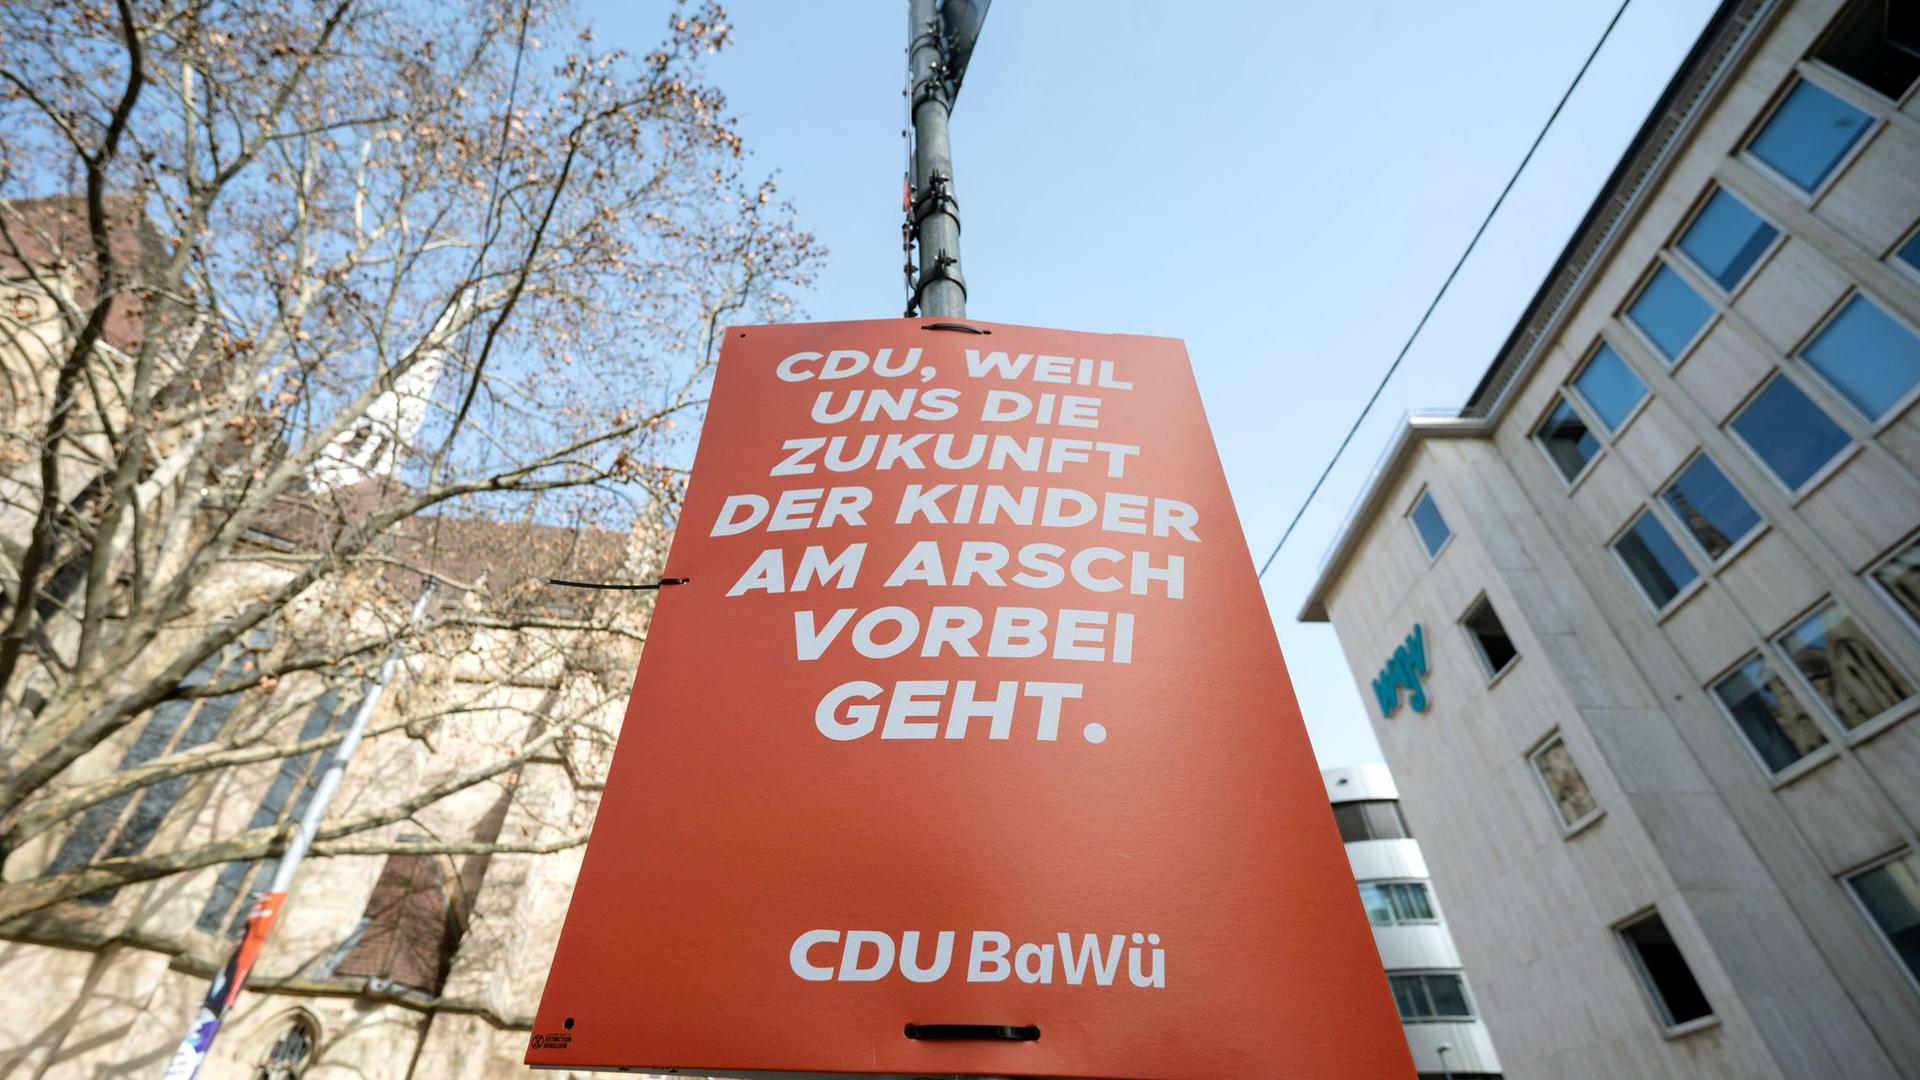 Ein gefälschtes Wahlplakat mit der Aufschrift „CDU, weil uns die Zukunft der Kinder am Arsch vorbei geht. CDU-BaWü“ hängt an einem Mast in der Innenstadt.